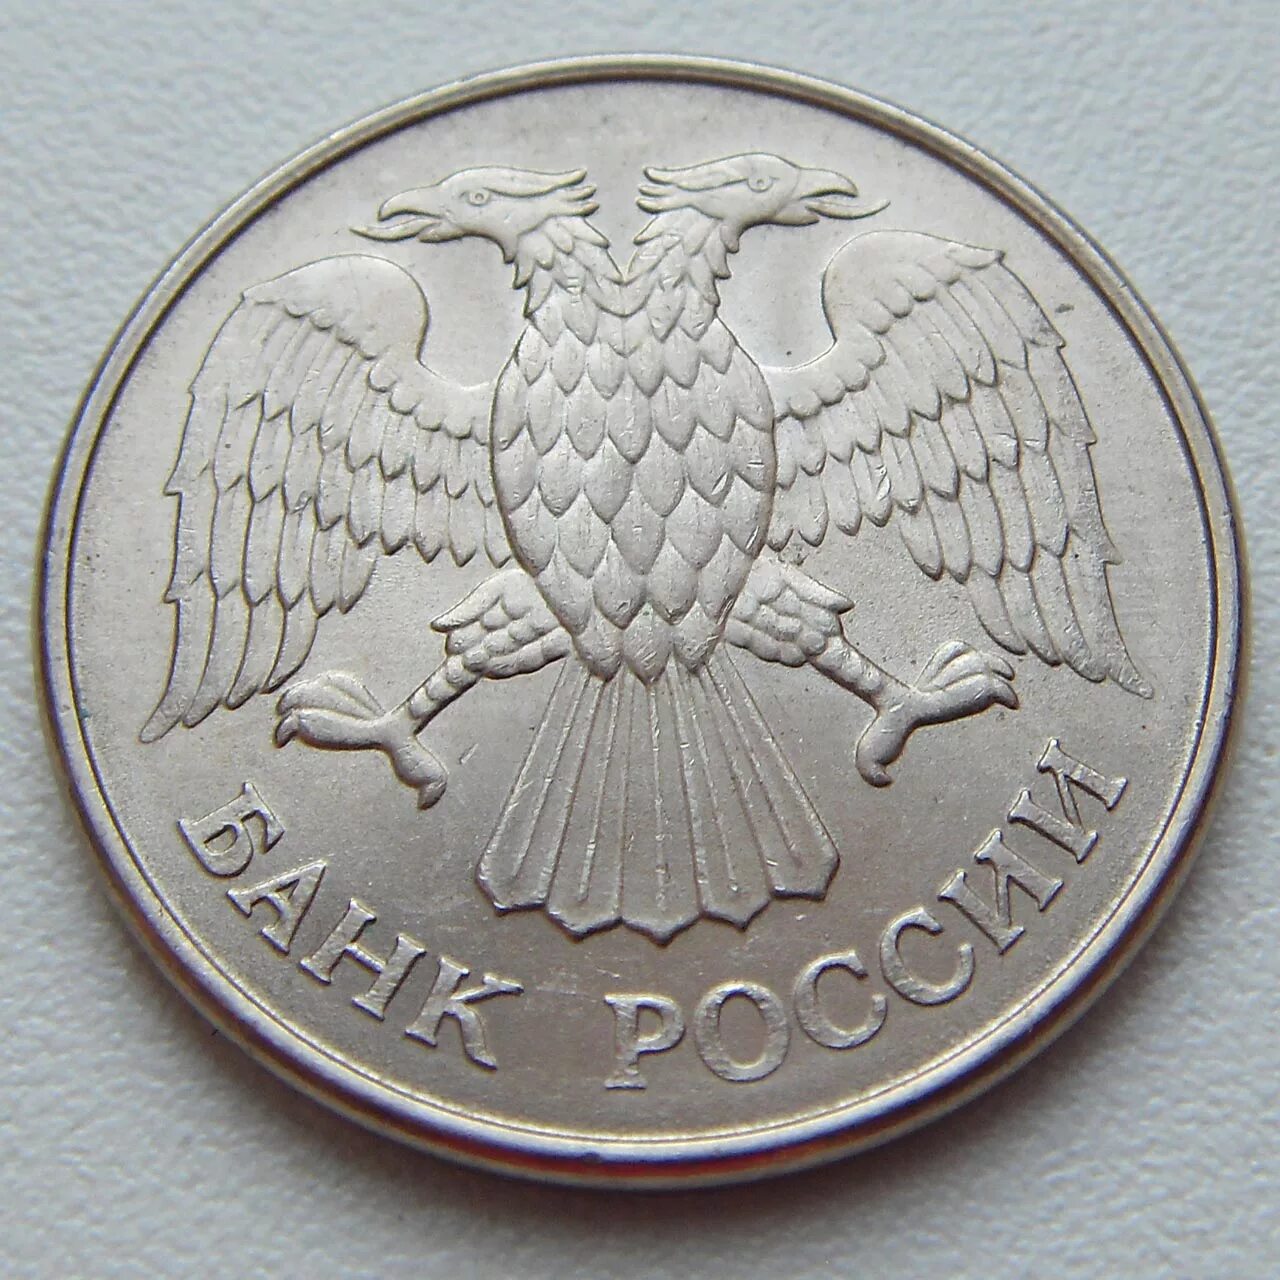 20 рублей россии. 20 Рублей 1992. Монета 20 рублей 1992 года. 20 Российских рублей. Двадцать рублей монета.